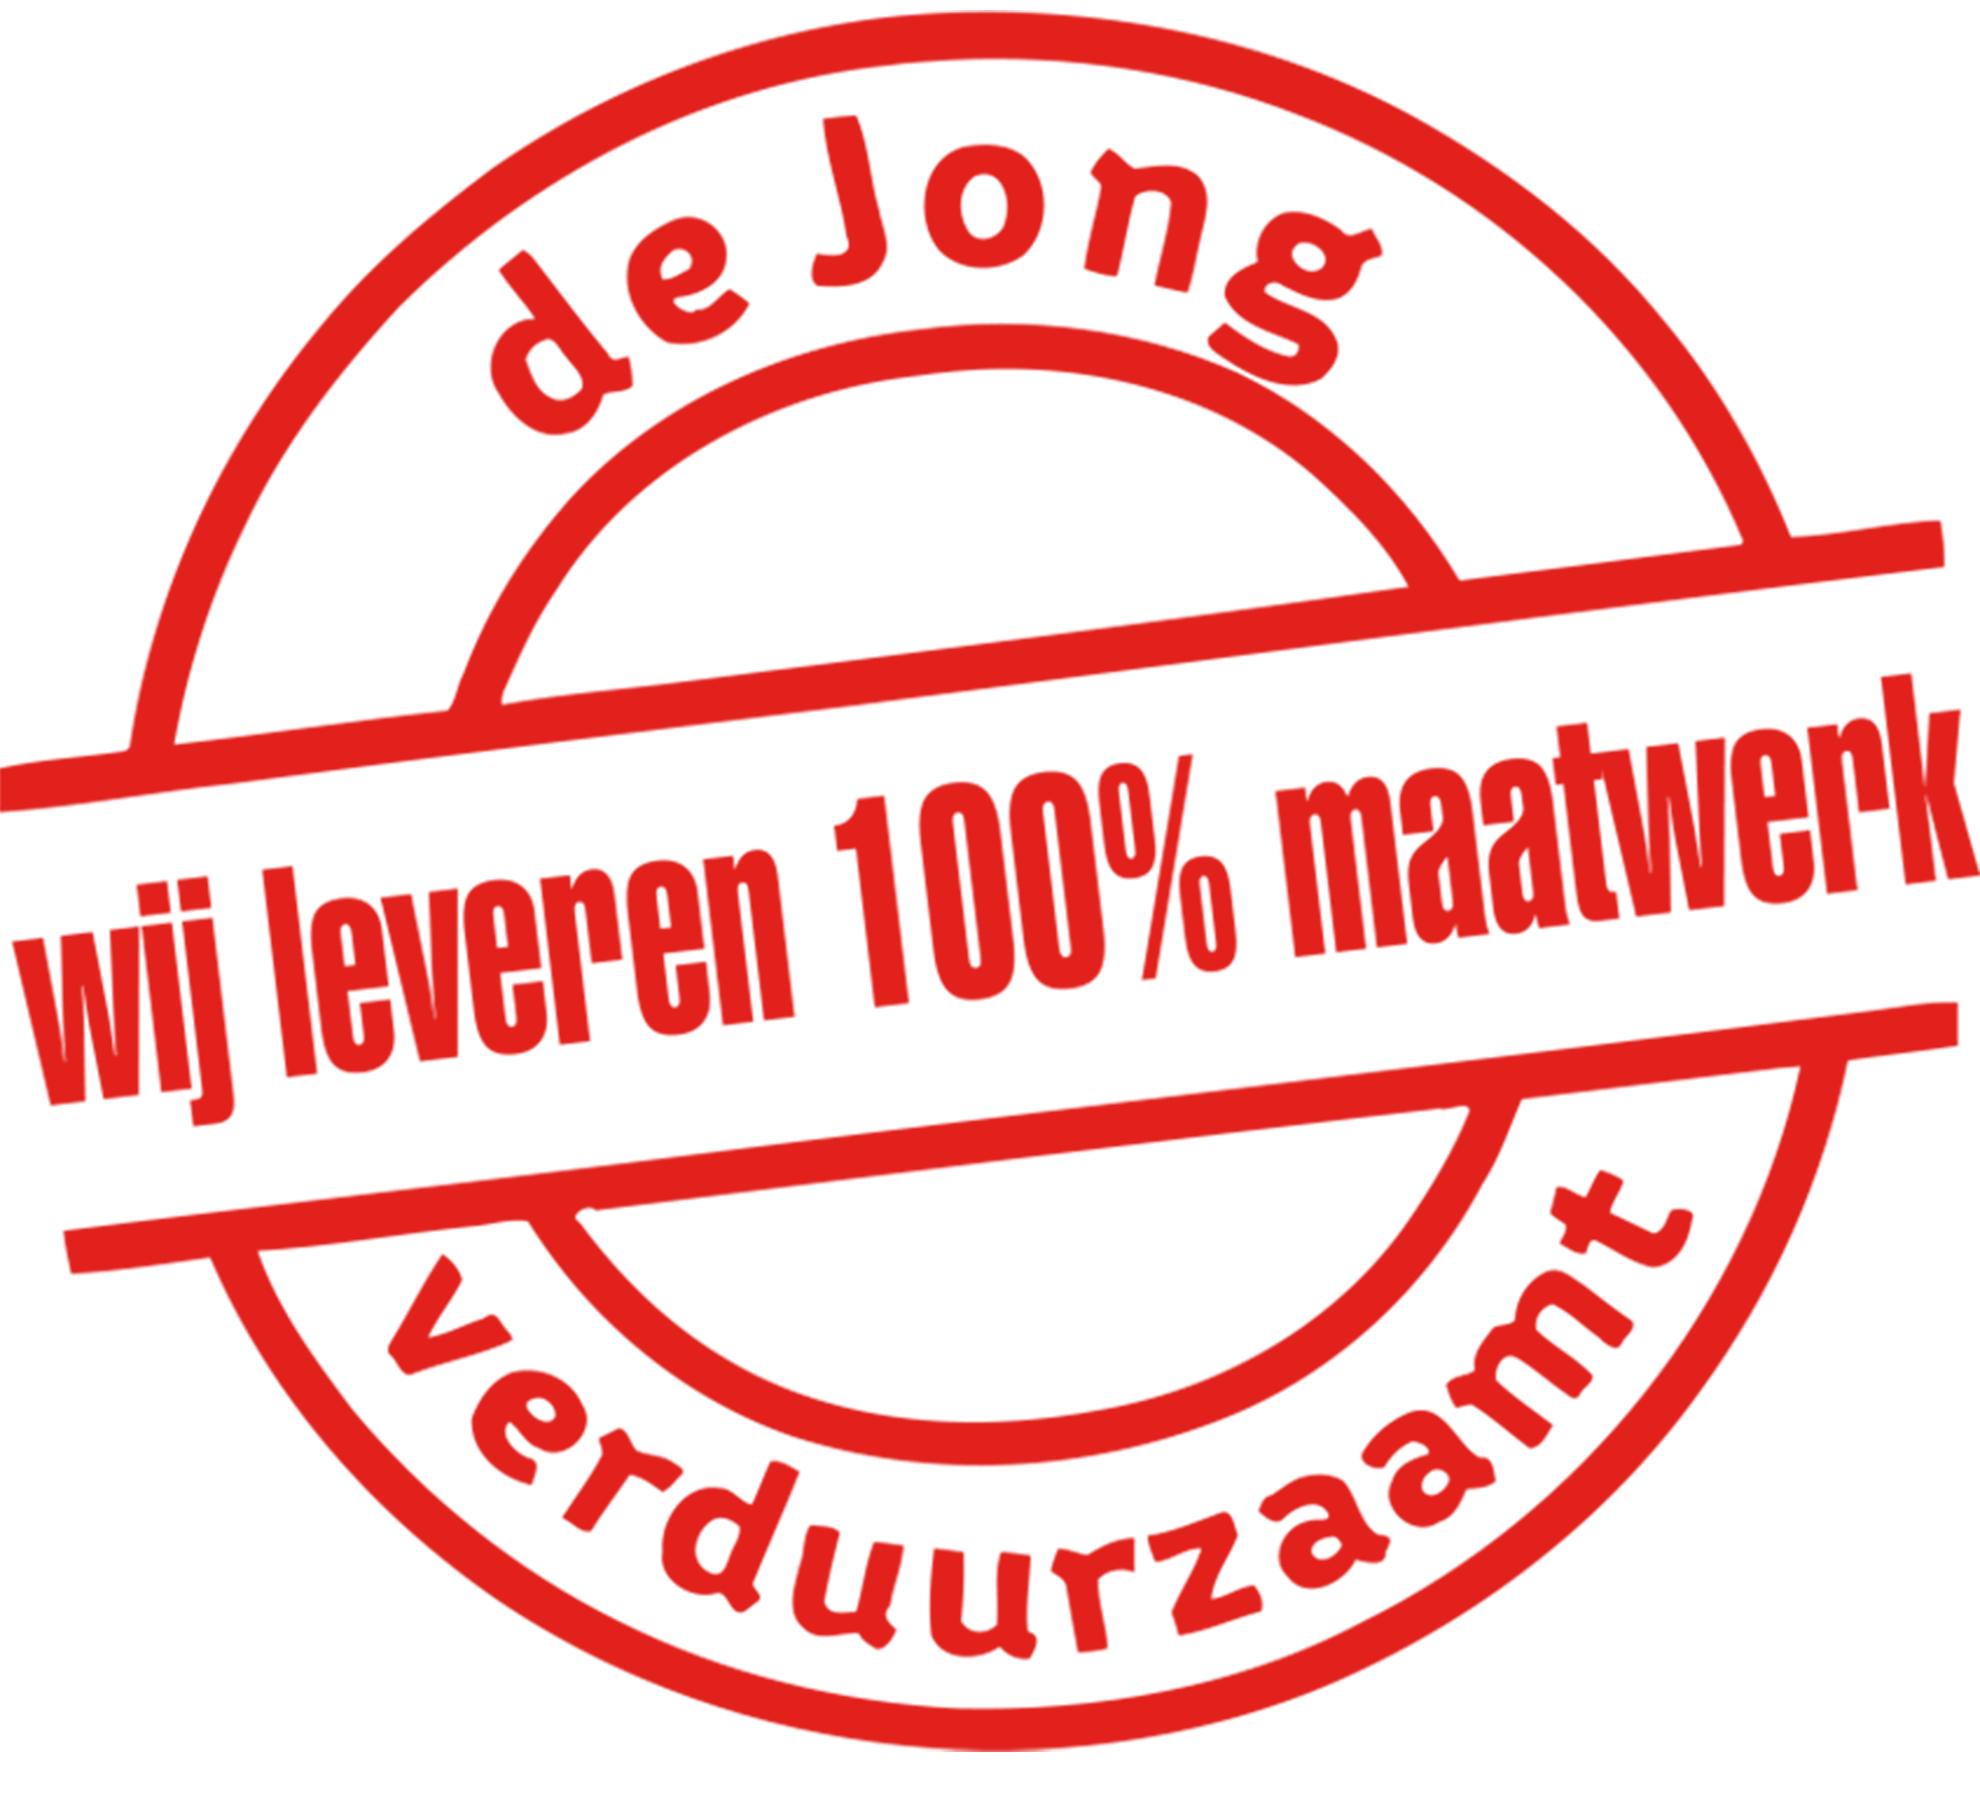 De Jong